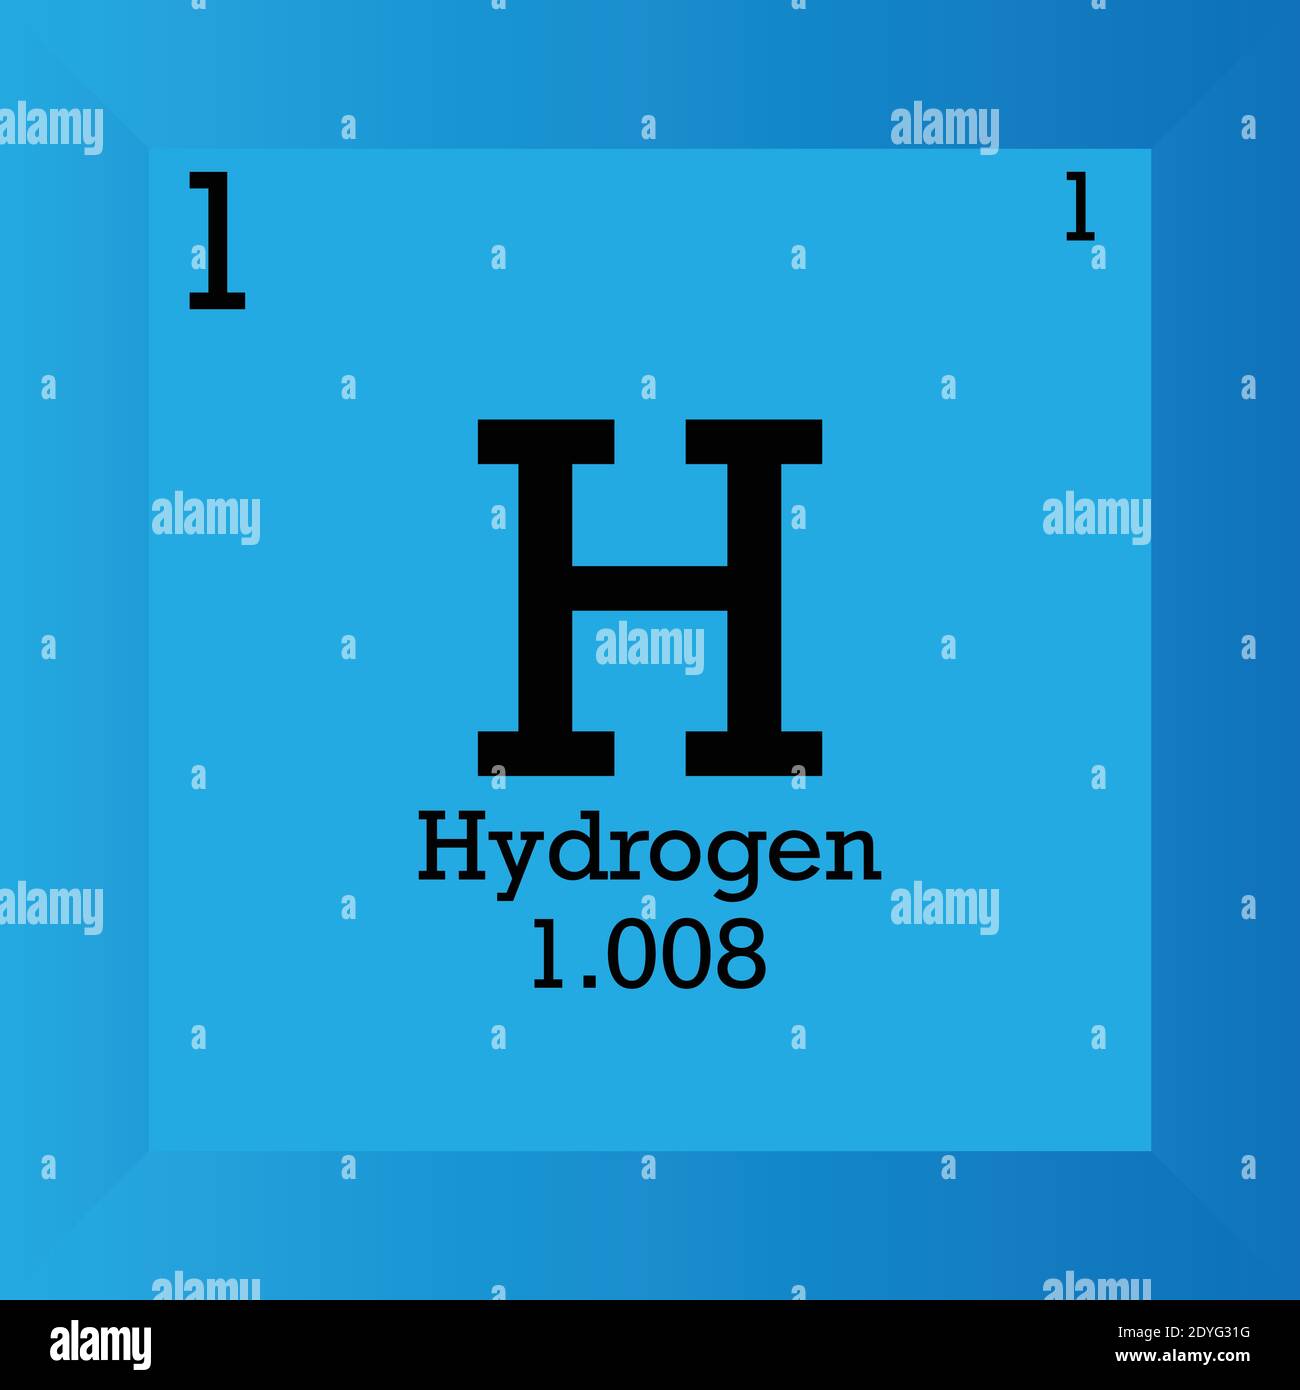 hydrogen mass